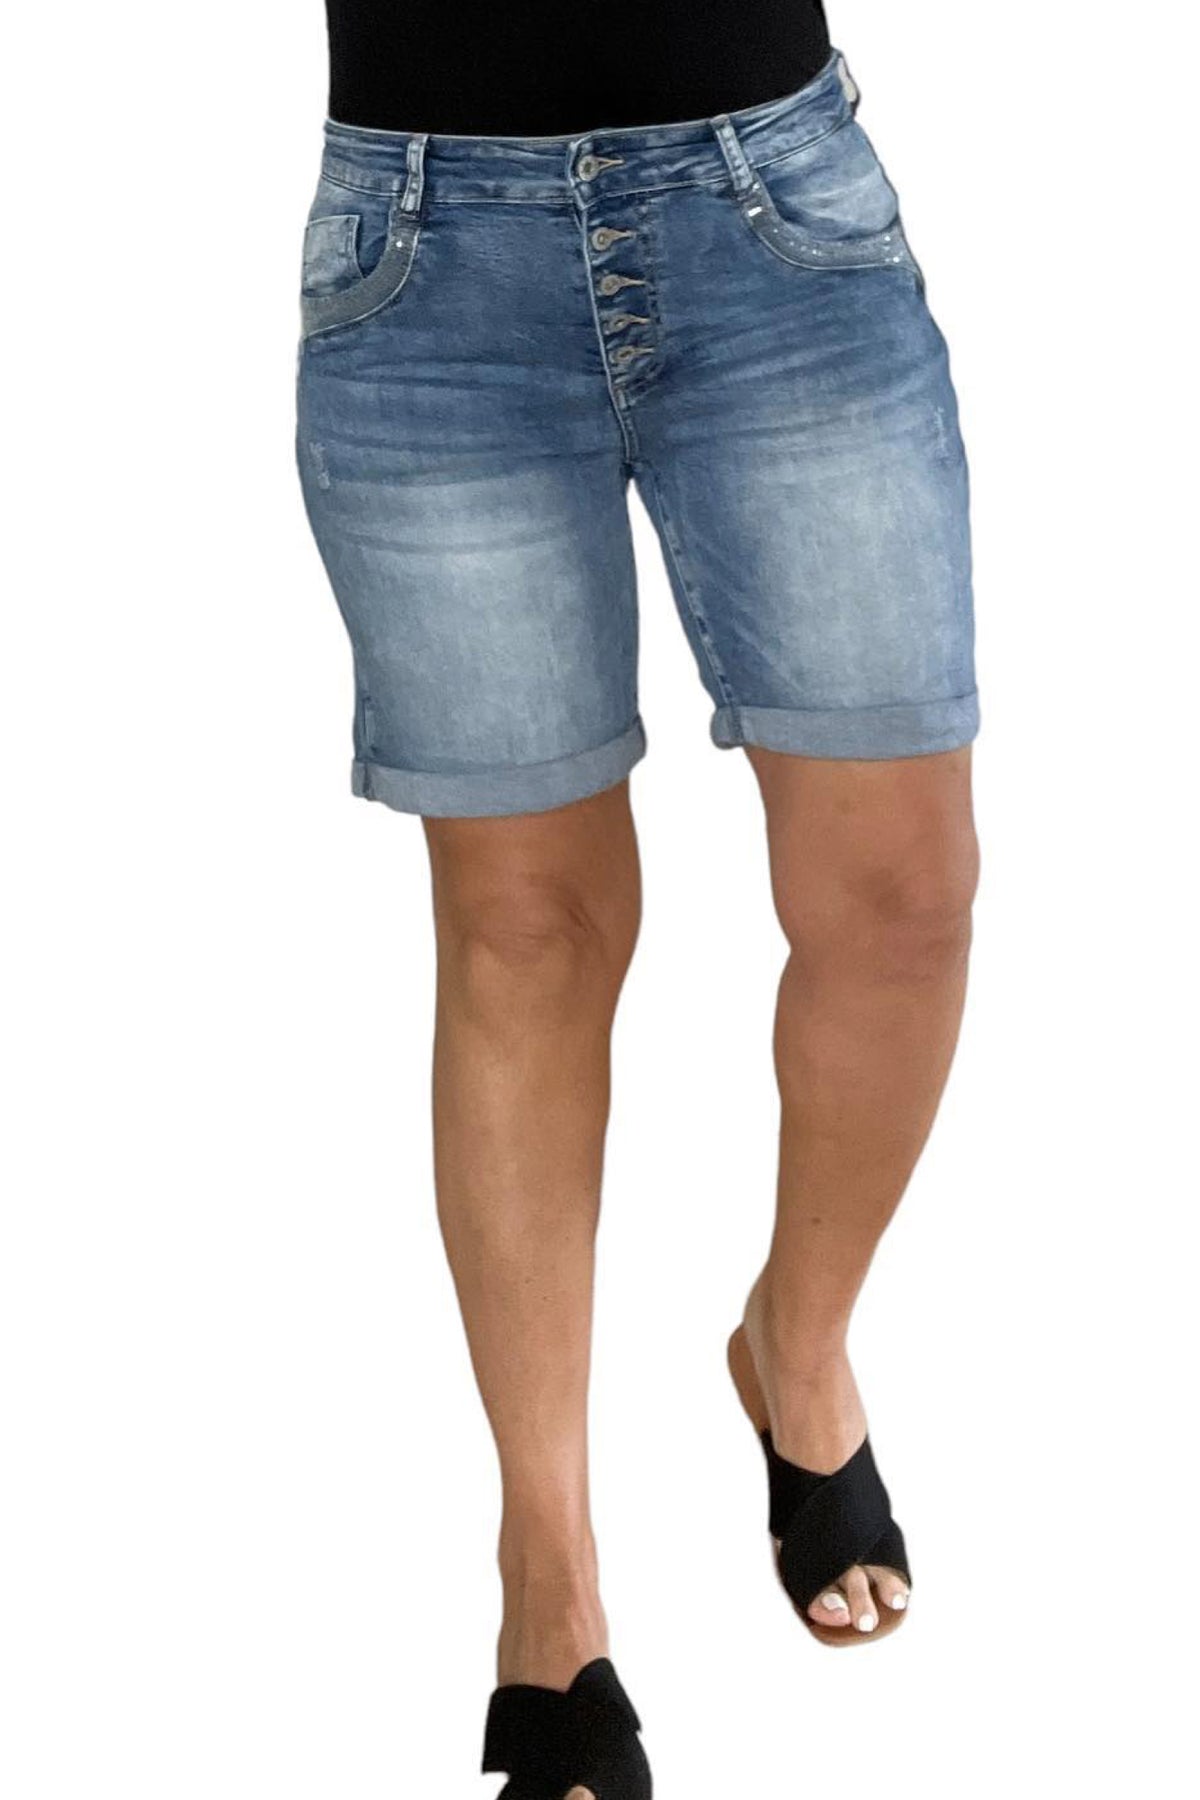 Pupa Denim Shorts